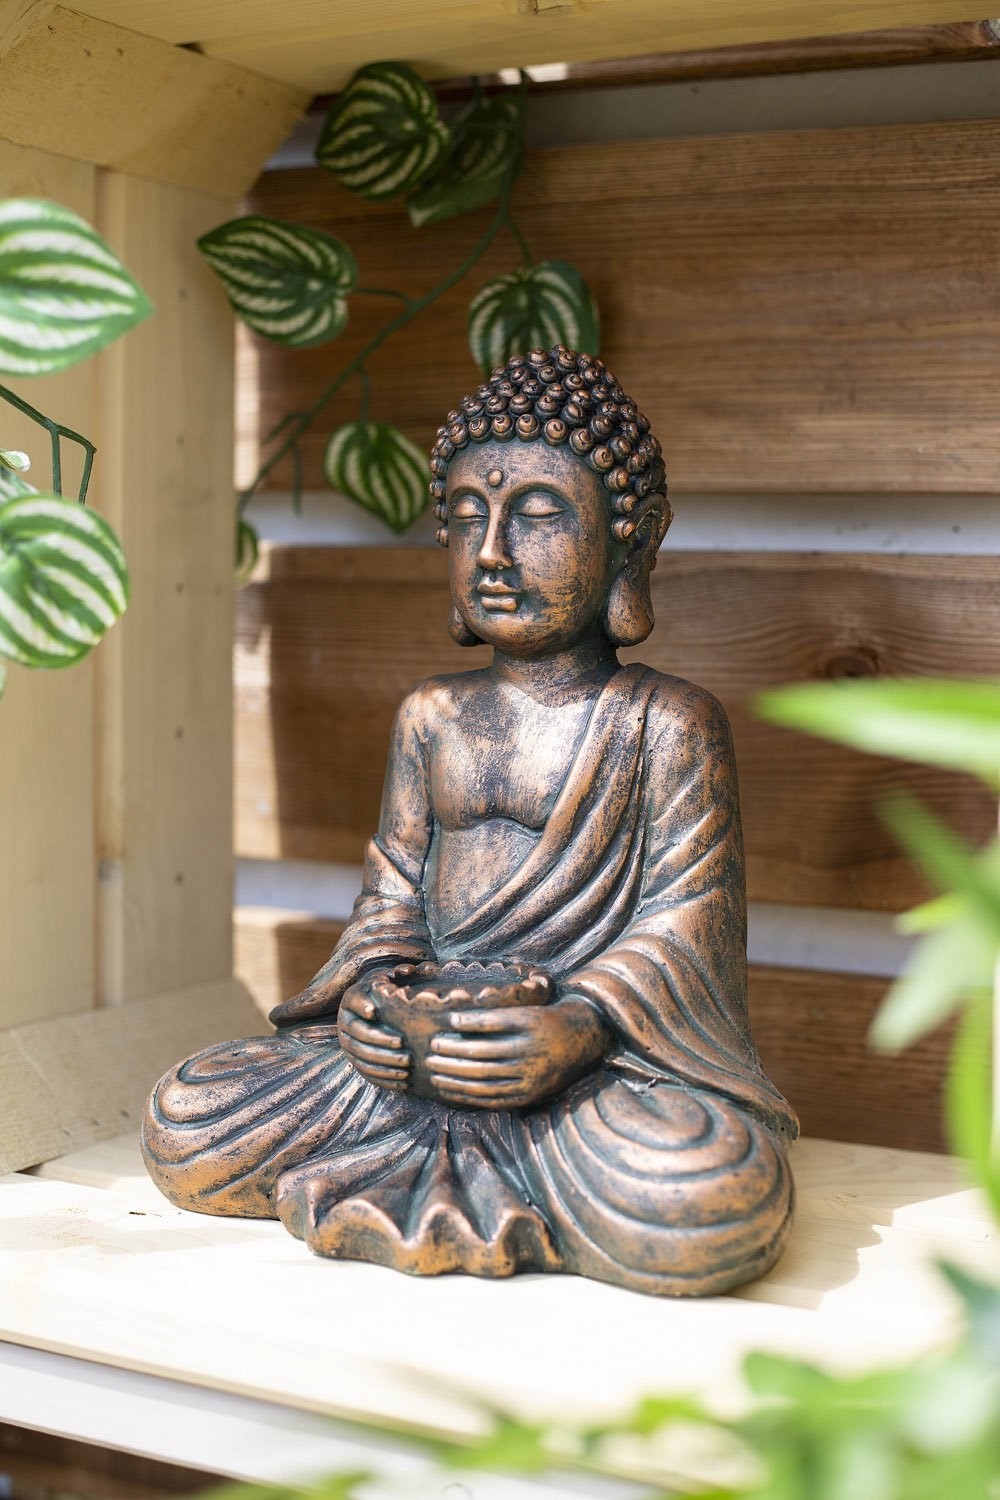 30cm Resin Medium Seated Buddha Garden Ornament by La Hacienda